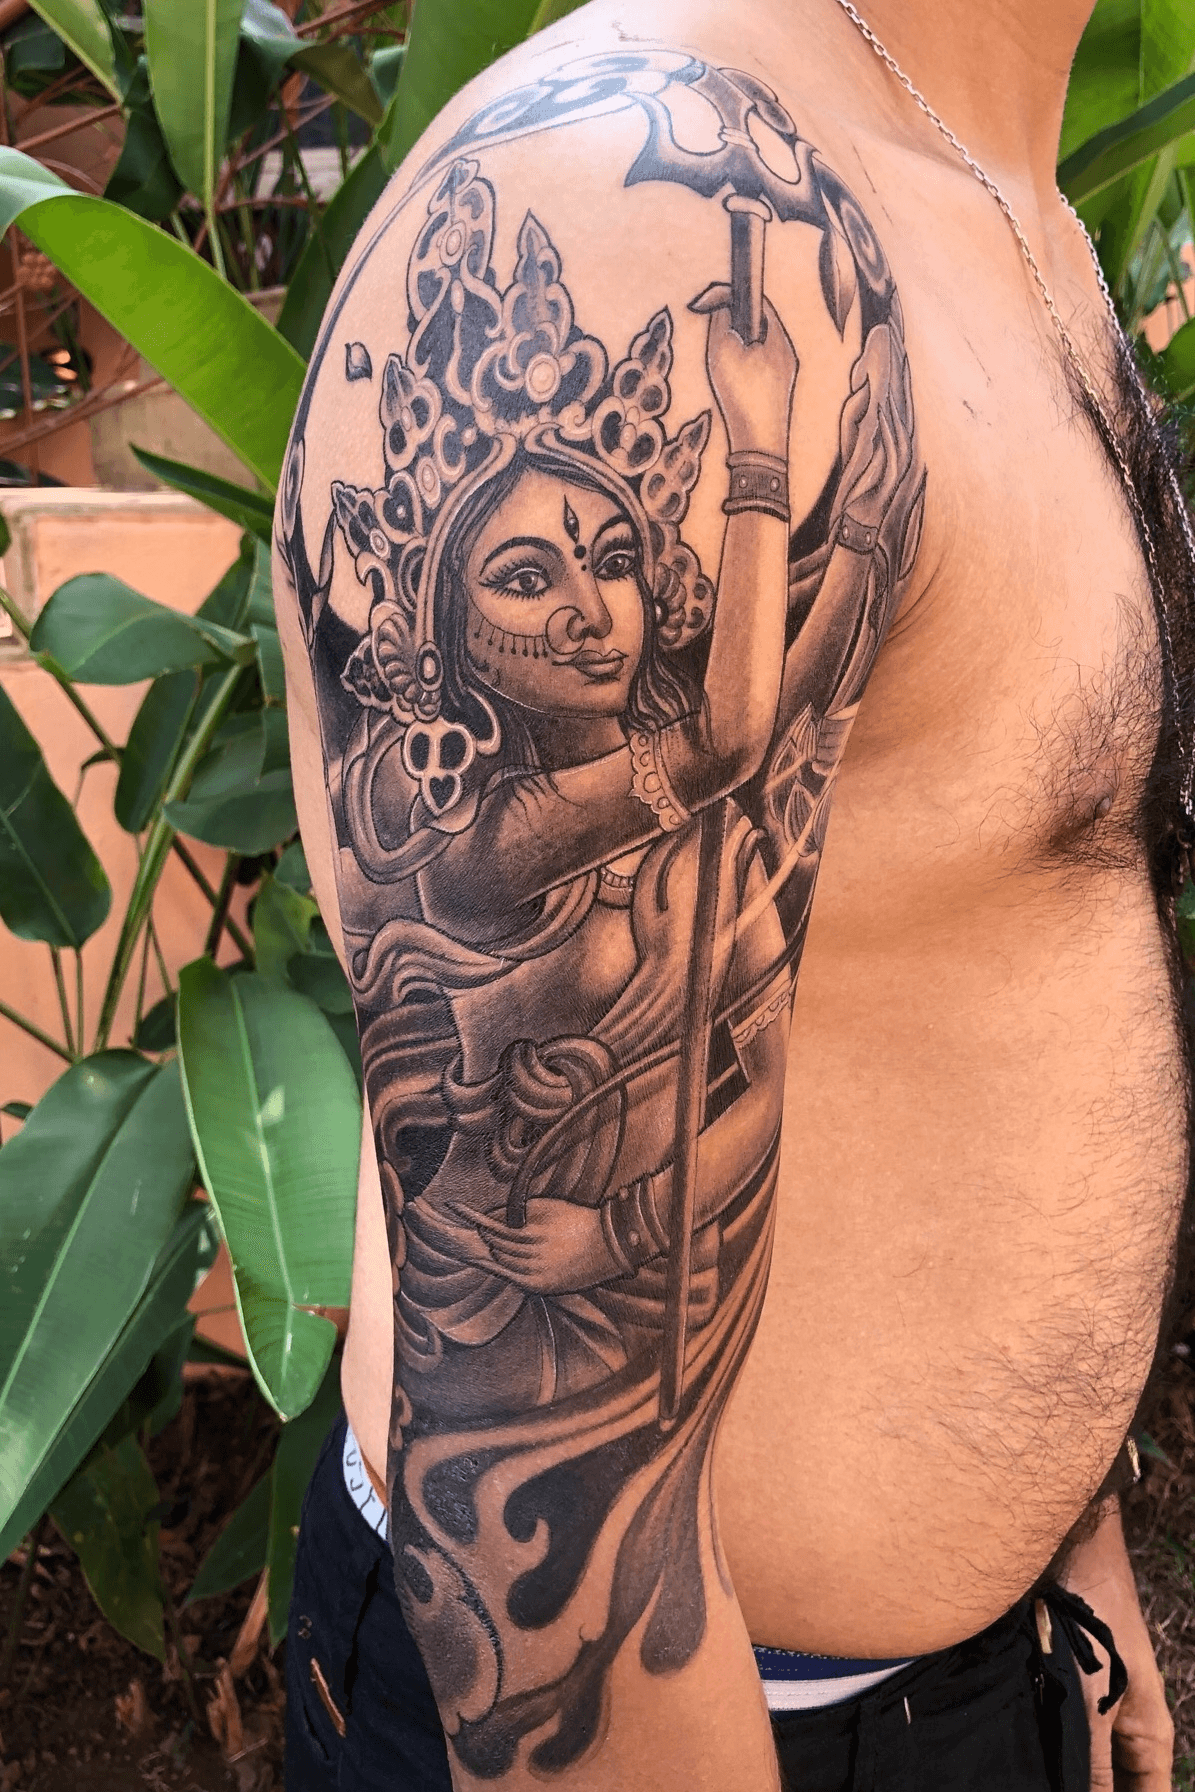 Nandi Tattoo and Art studio  durga maa tattoo inked at  nanditattoostudio nanditattoos tattooideas tattoos hindu goddess  durgamaa tattooartist tattooillustration tattoocommunity  tattoorealistic tattoodo tattoostyle tattooart ink 